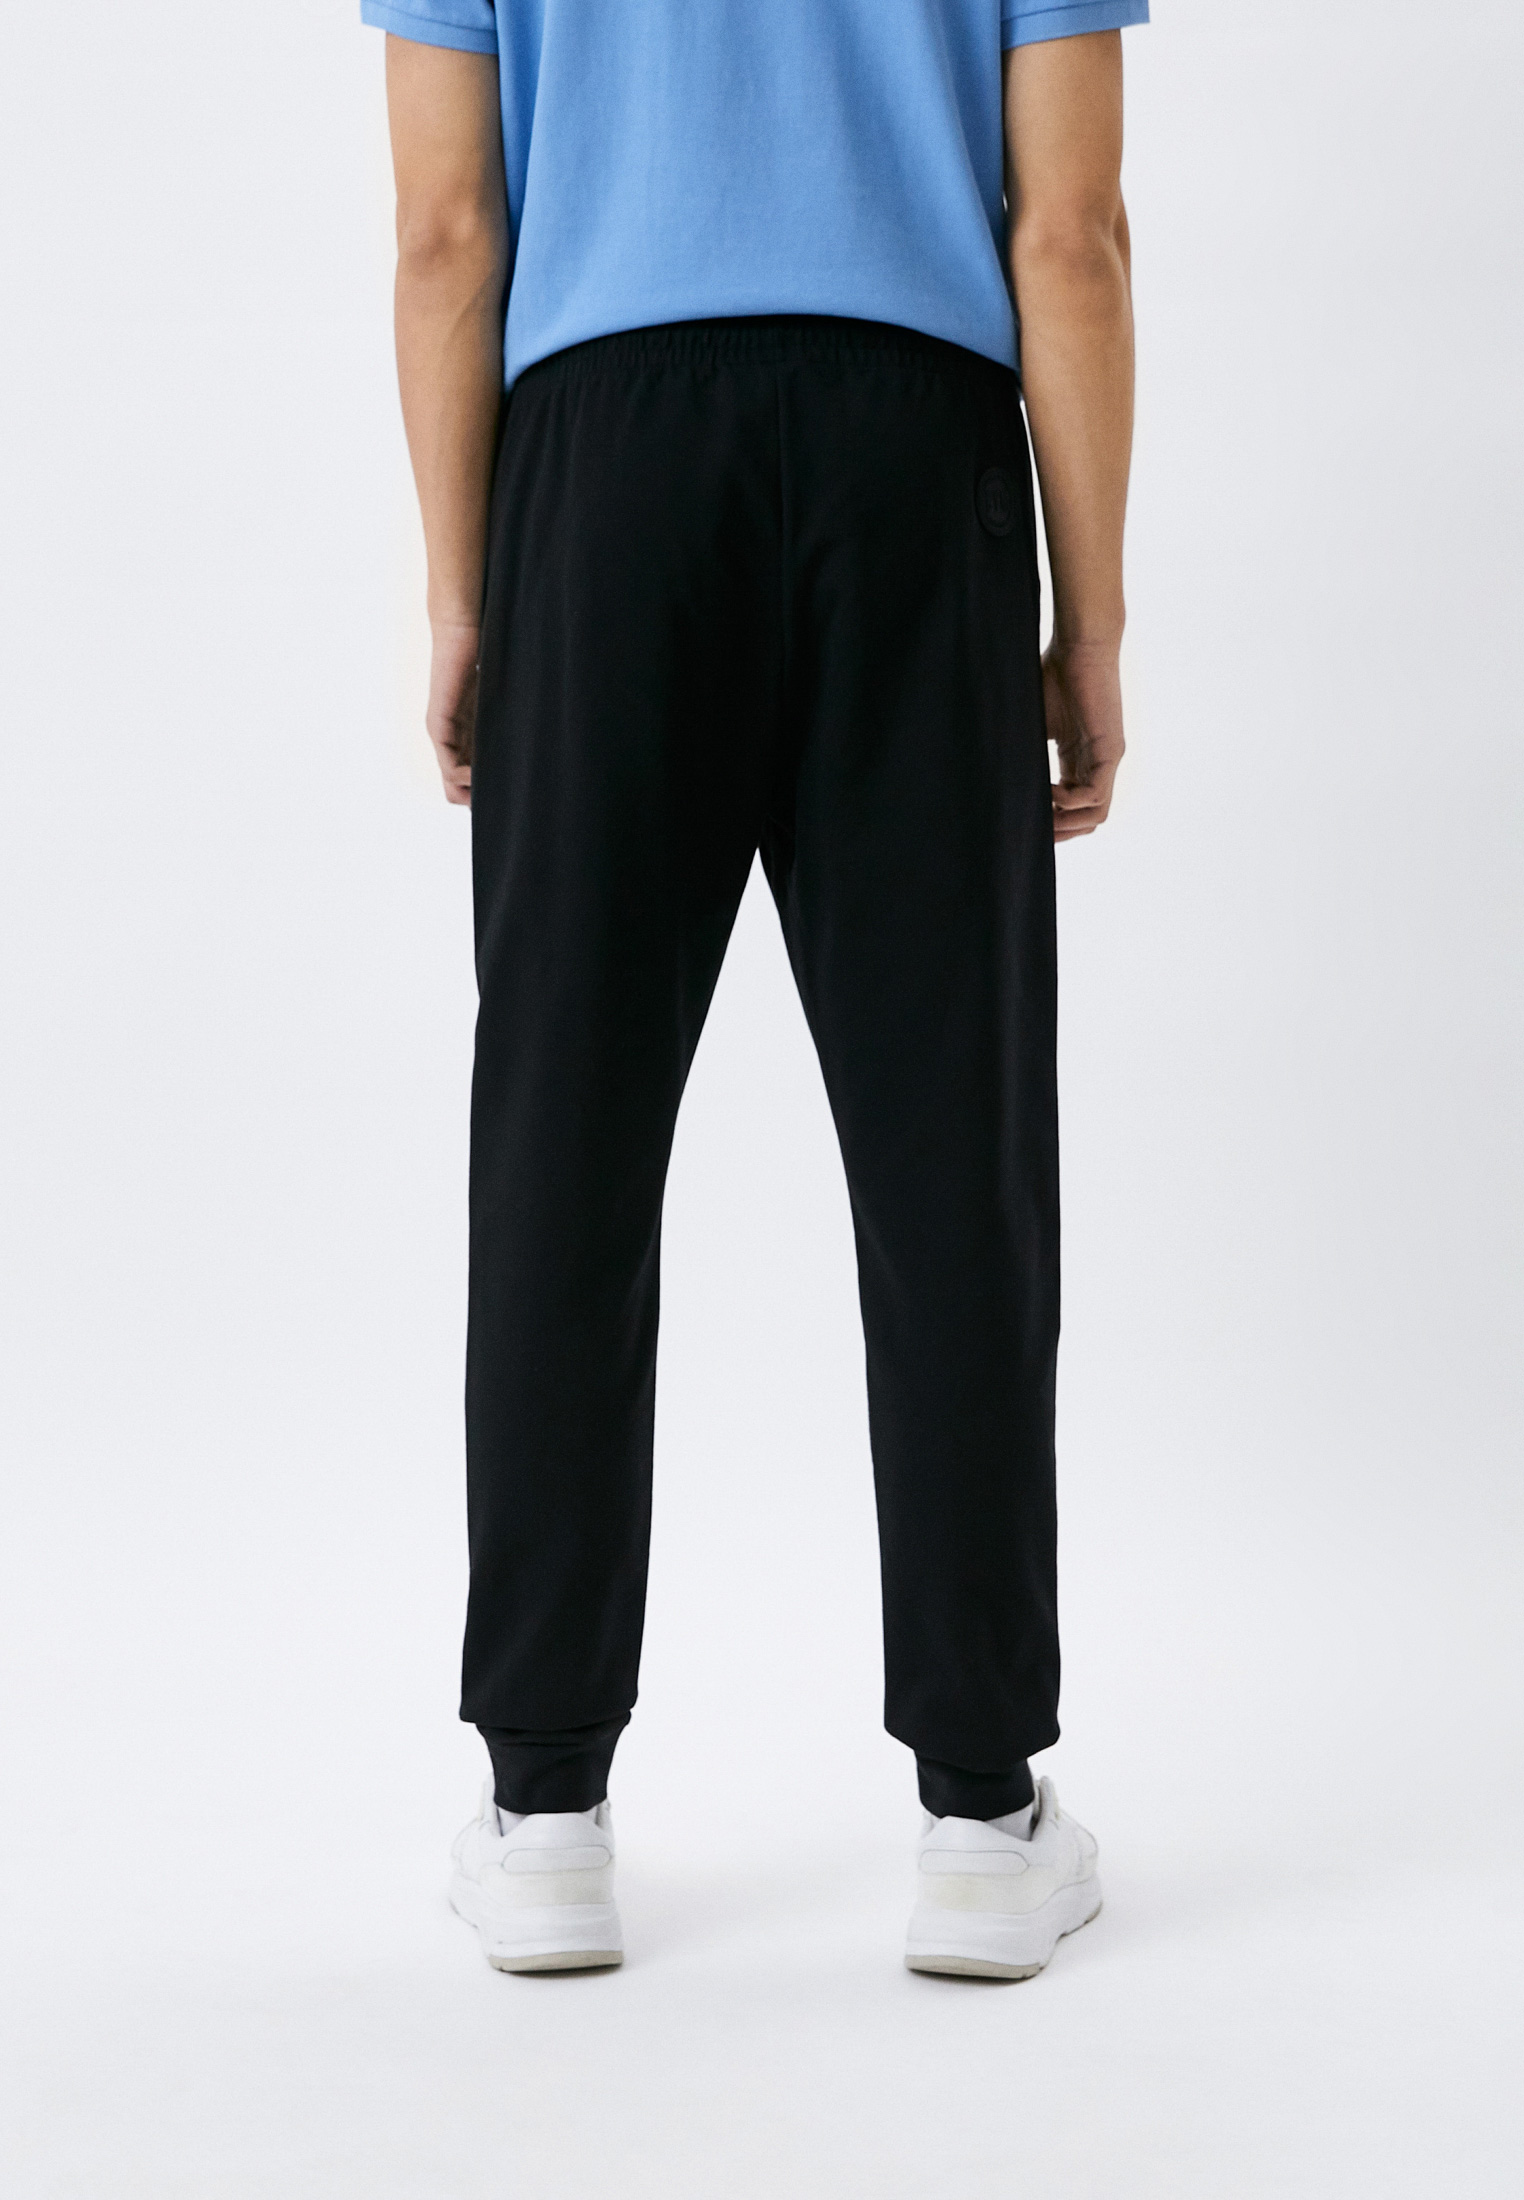 Мужские спортивные брюки Bikkembergs (Биккембергс) C121180E2276: изображение 3